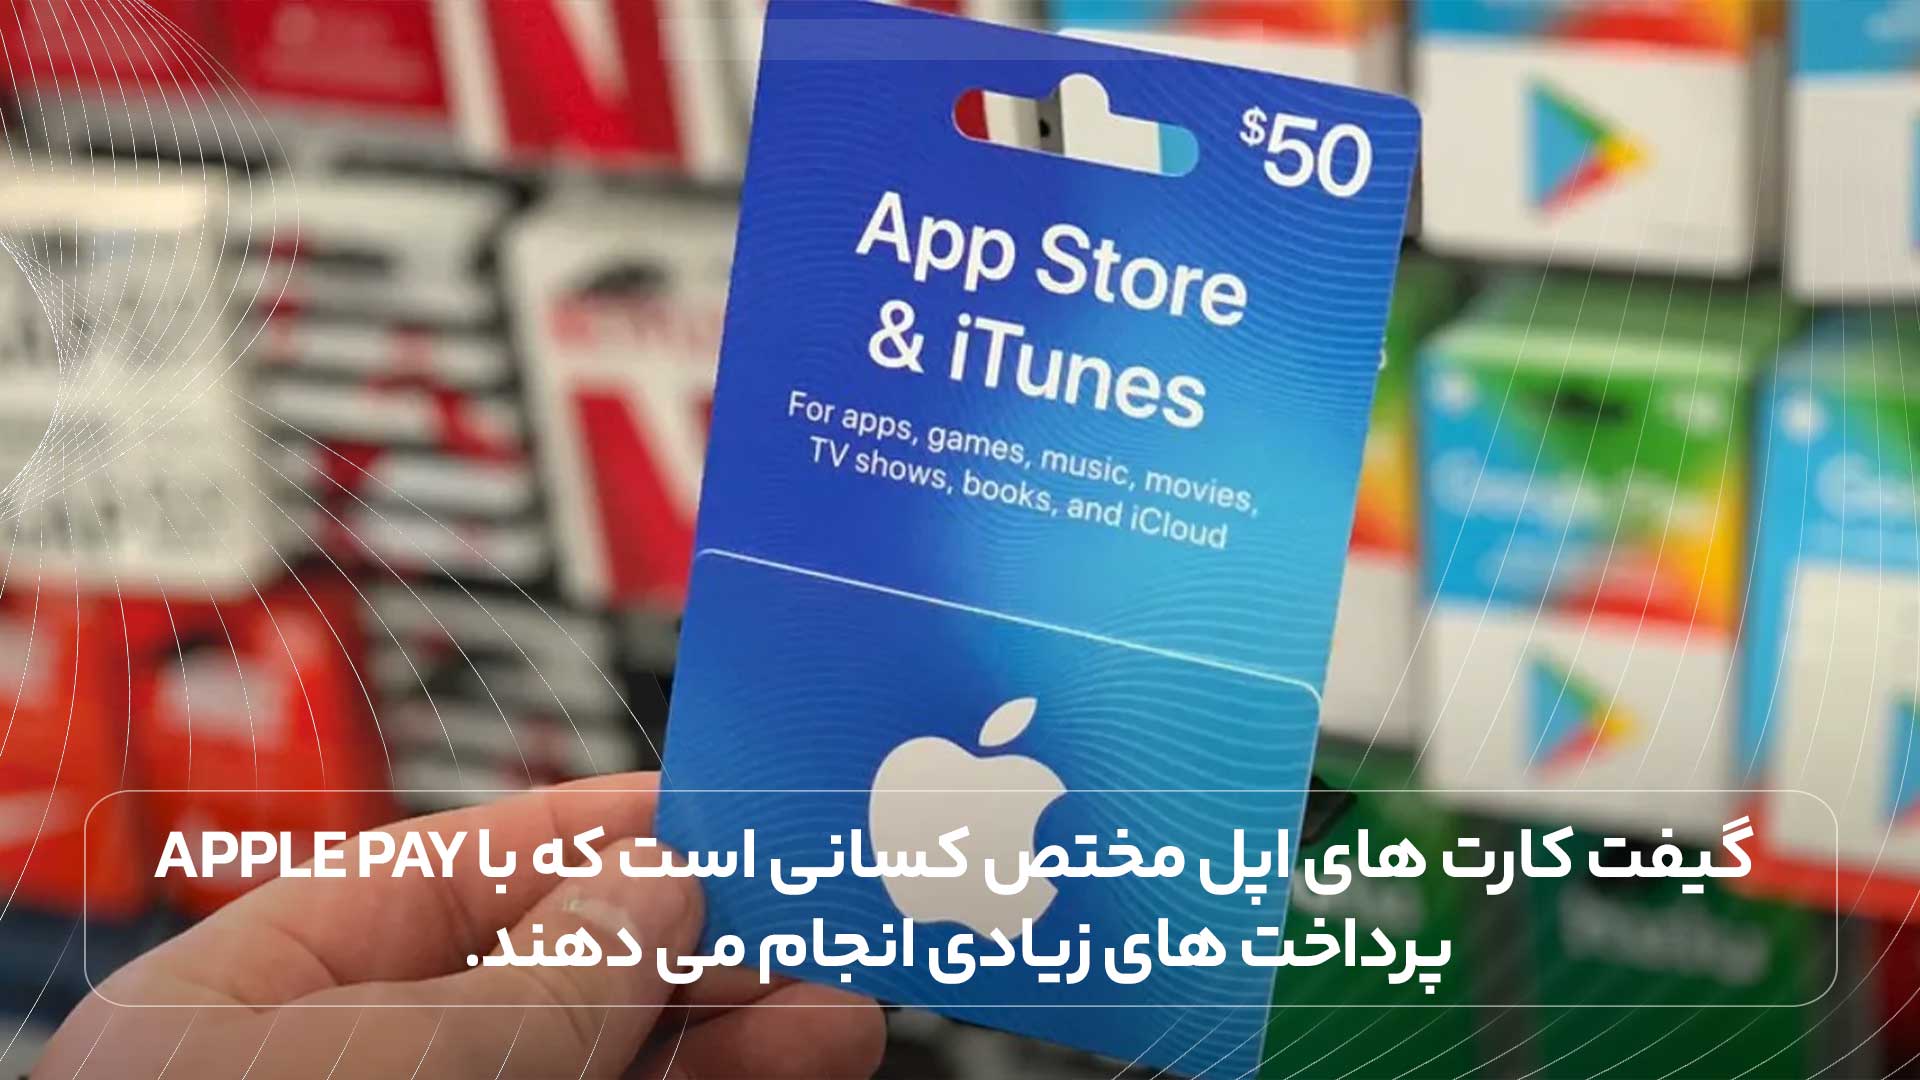 گی فت کارت های اپل مختص کسانی است که با apple pay پرداخت های زیادی انجام می دهند.